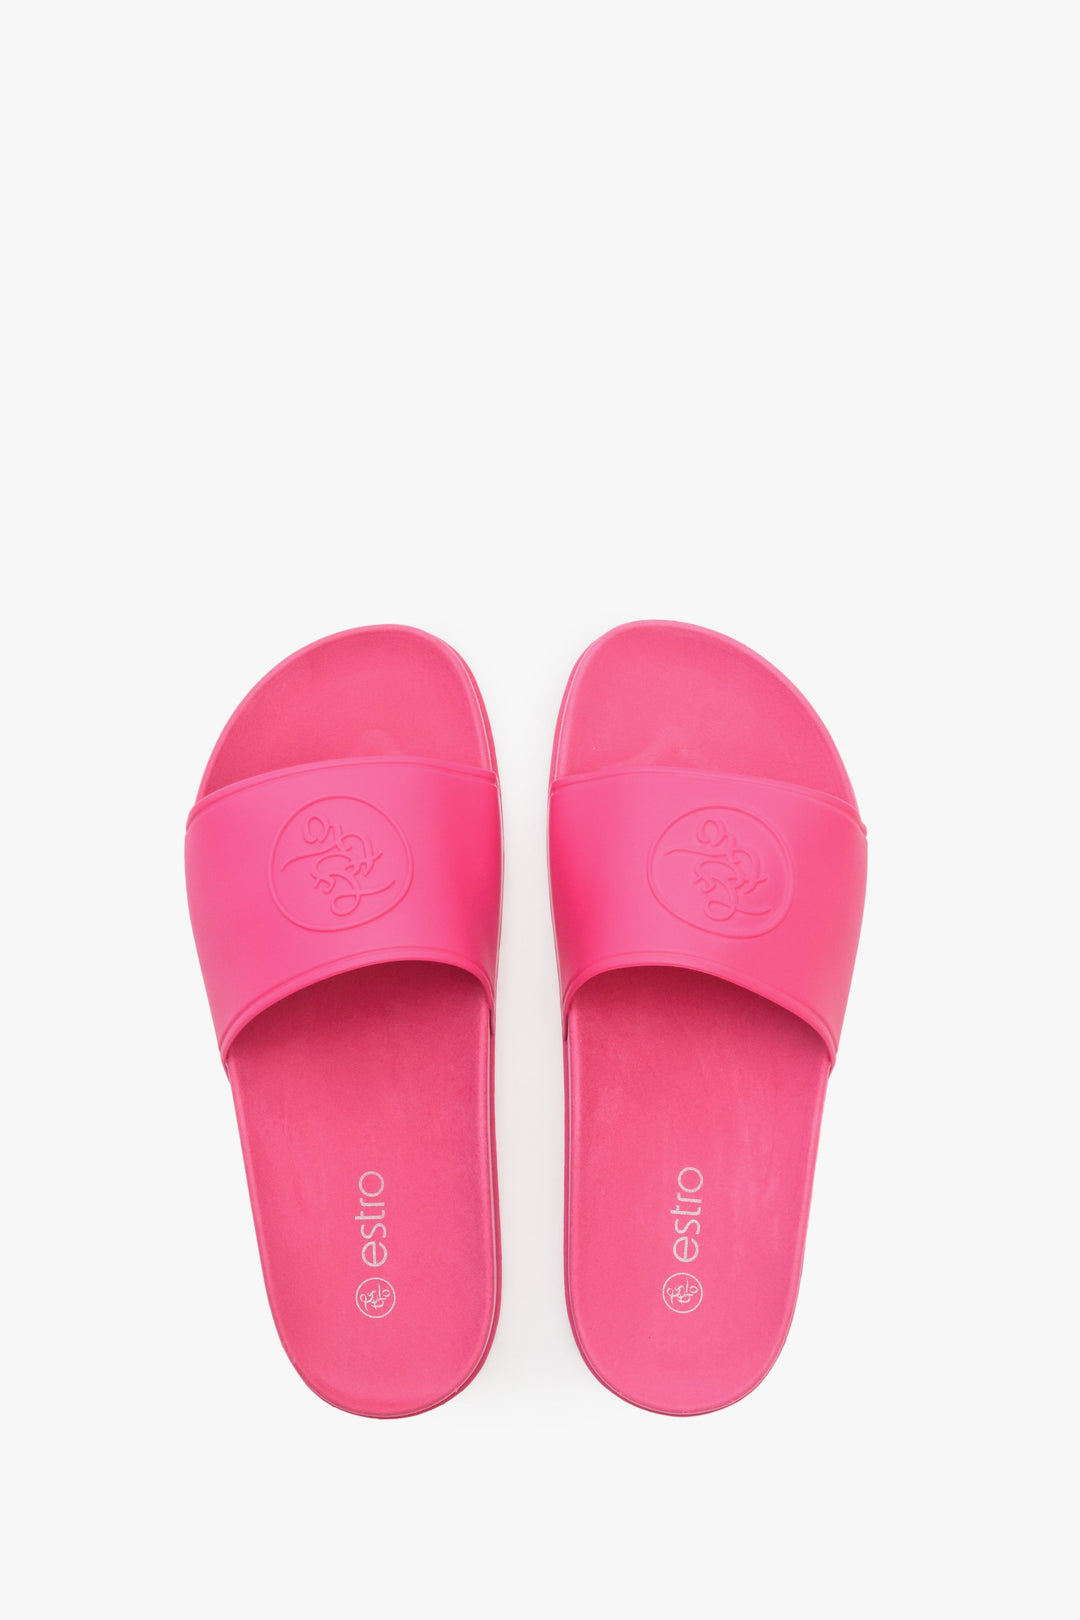 Basenowe klapki damskie Estro z gumy w kolorze różowym.